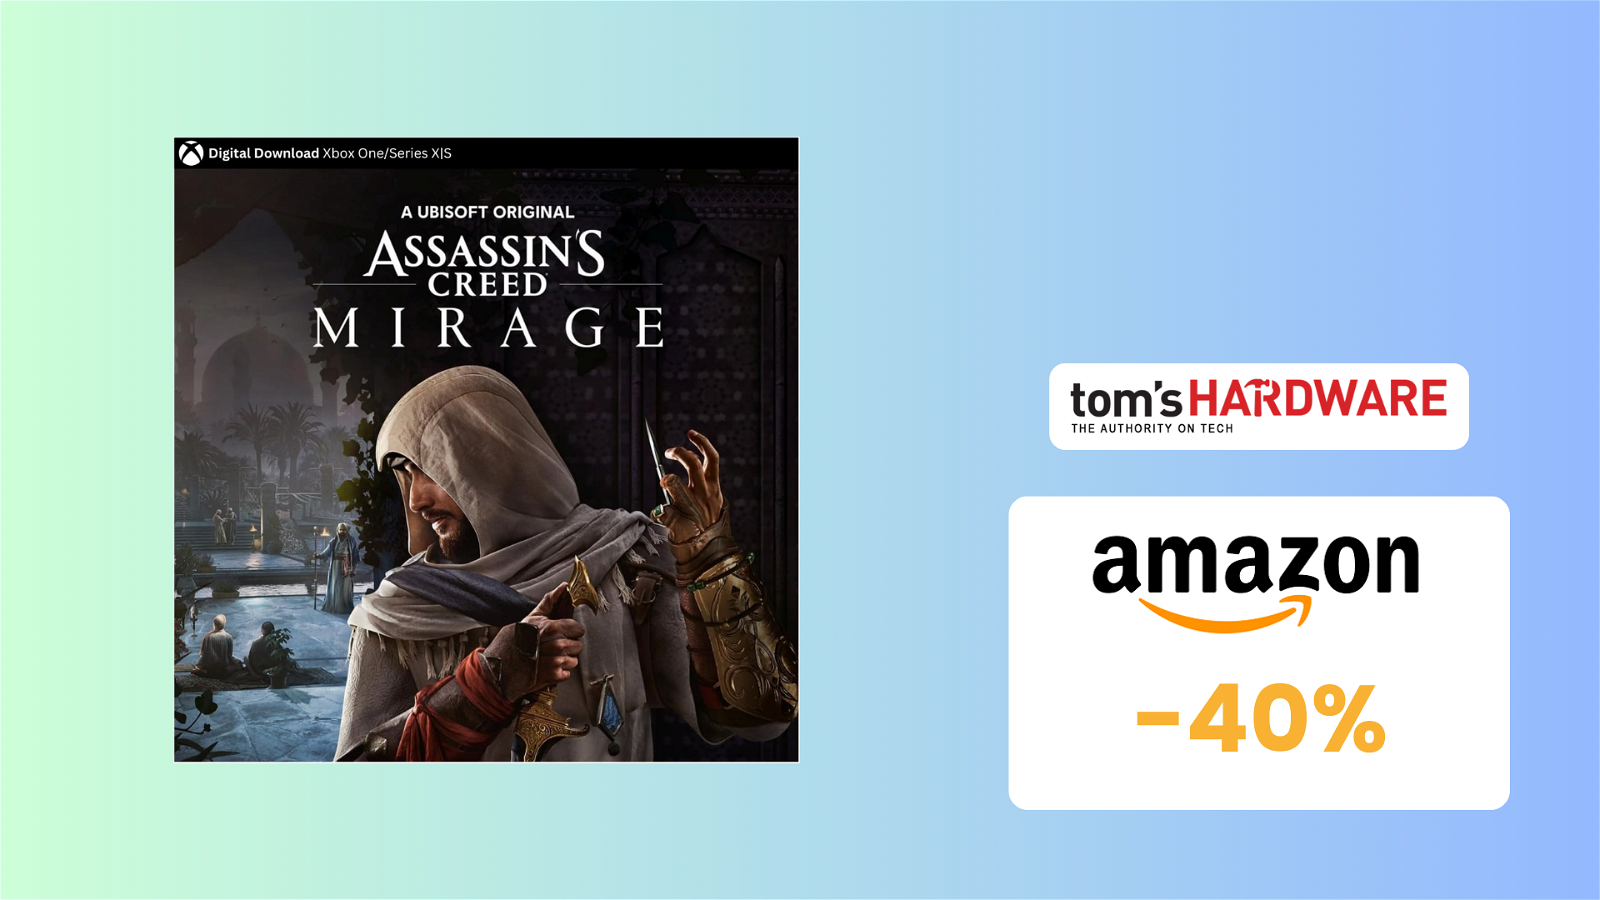 Immagine di MINIMO STORICO per Assassin's Creed Mirage, lo paghi solo 29€!